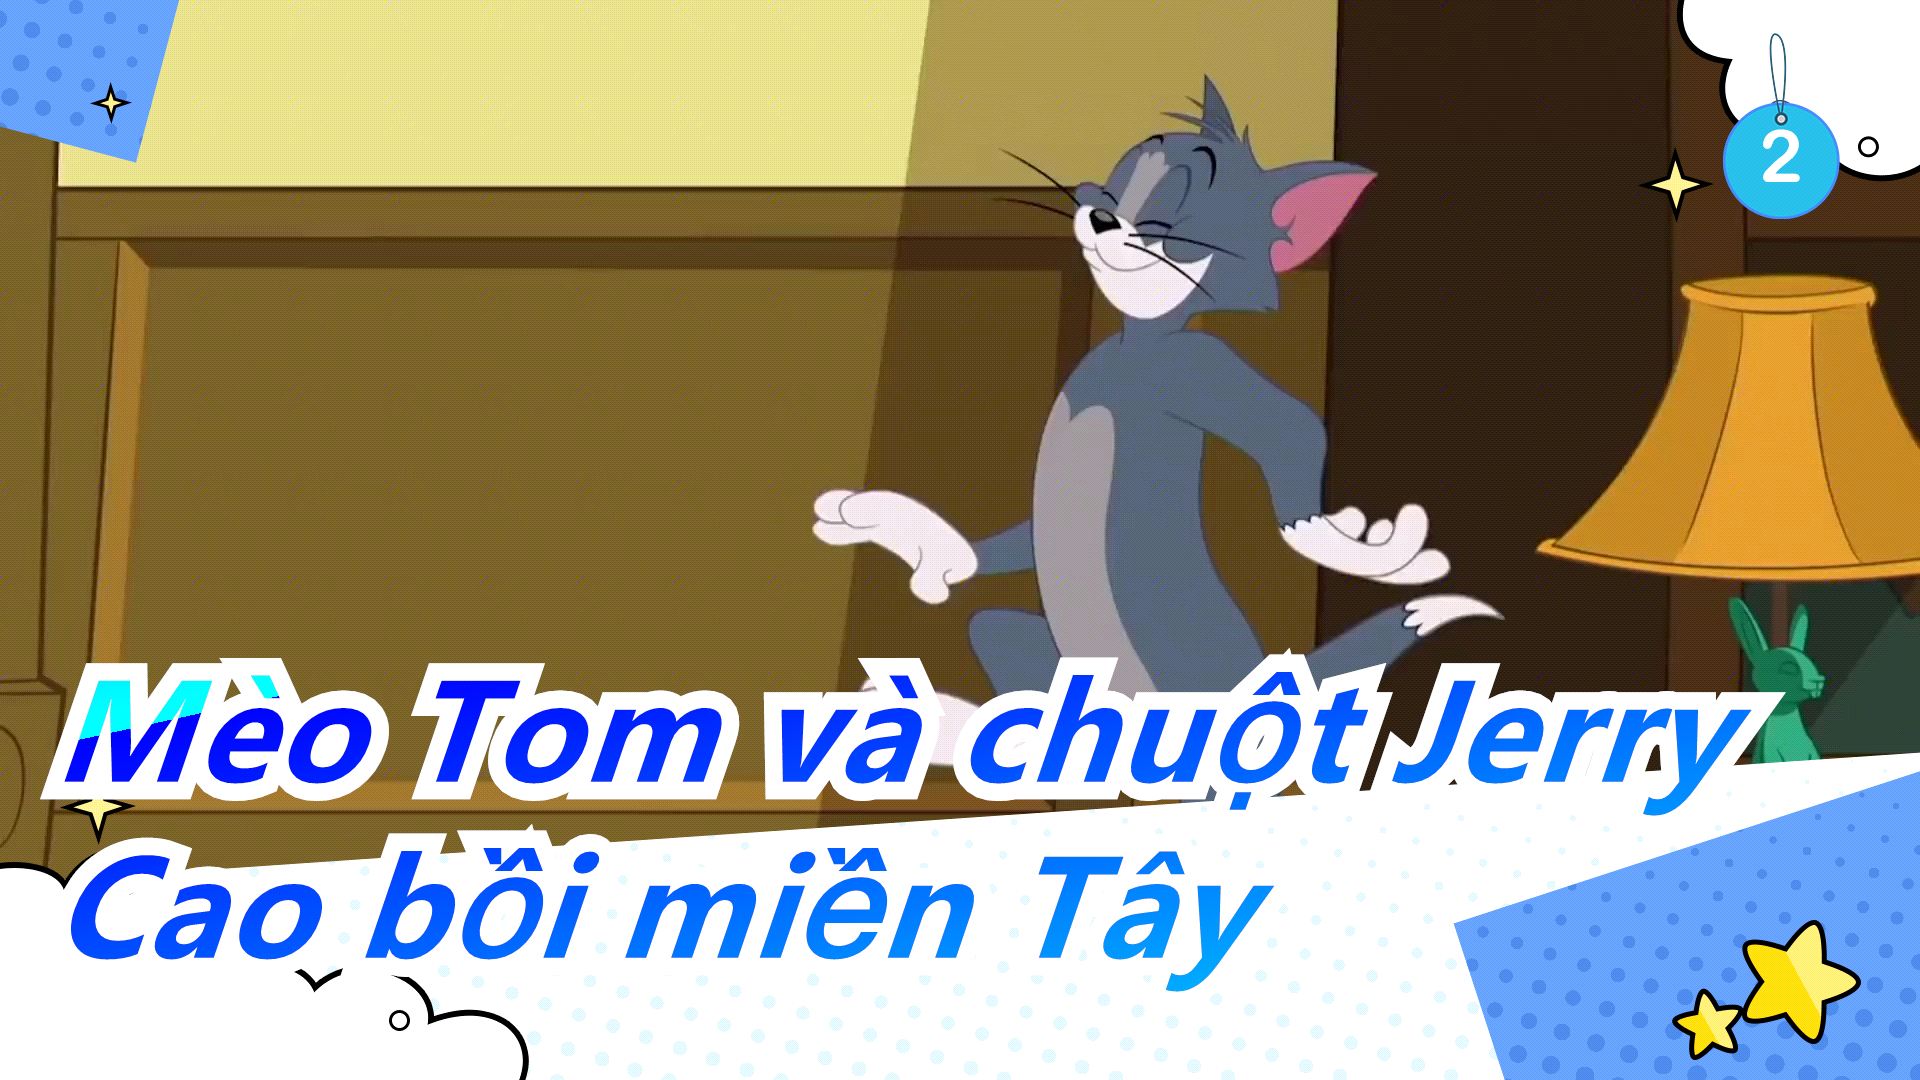 Chuột Jerry đấm vào mặt mèo Tom tí hon  Ảnh chế meme